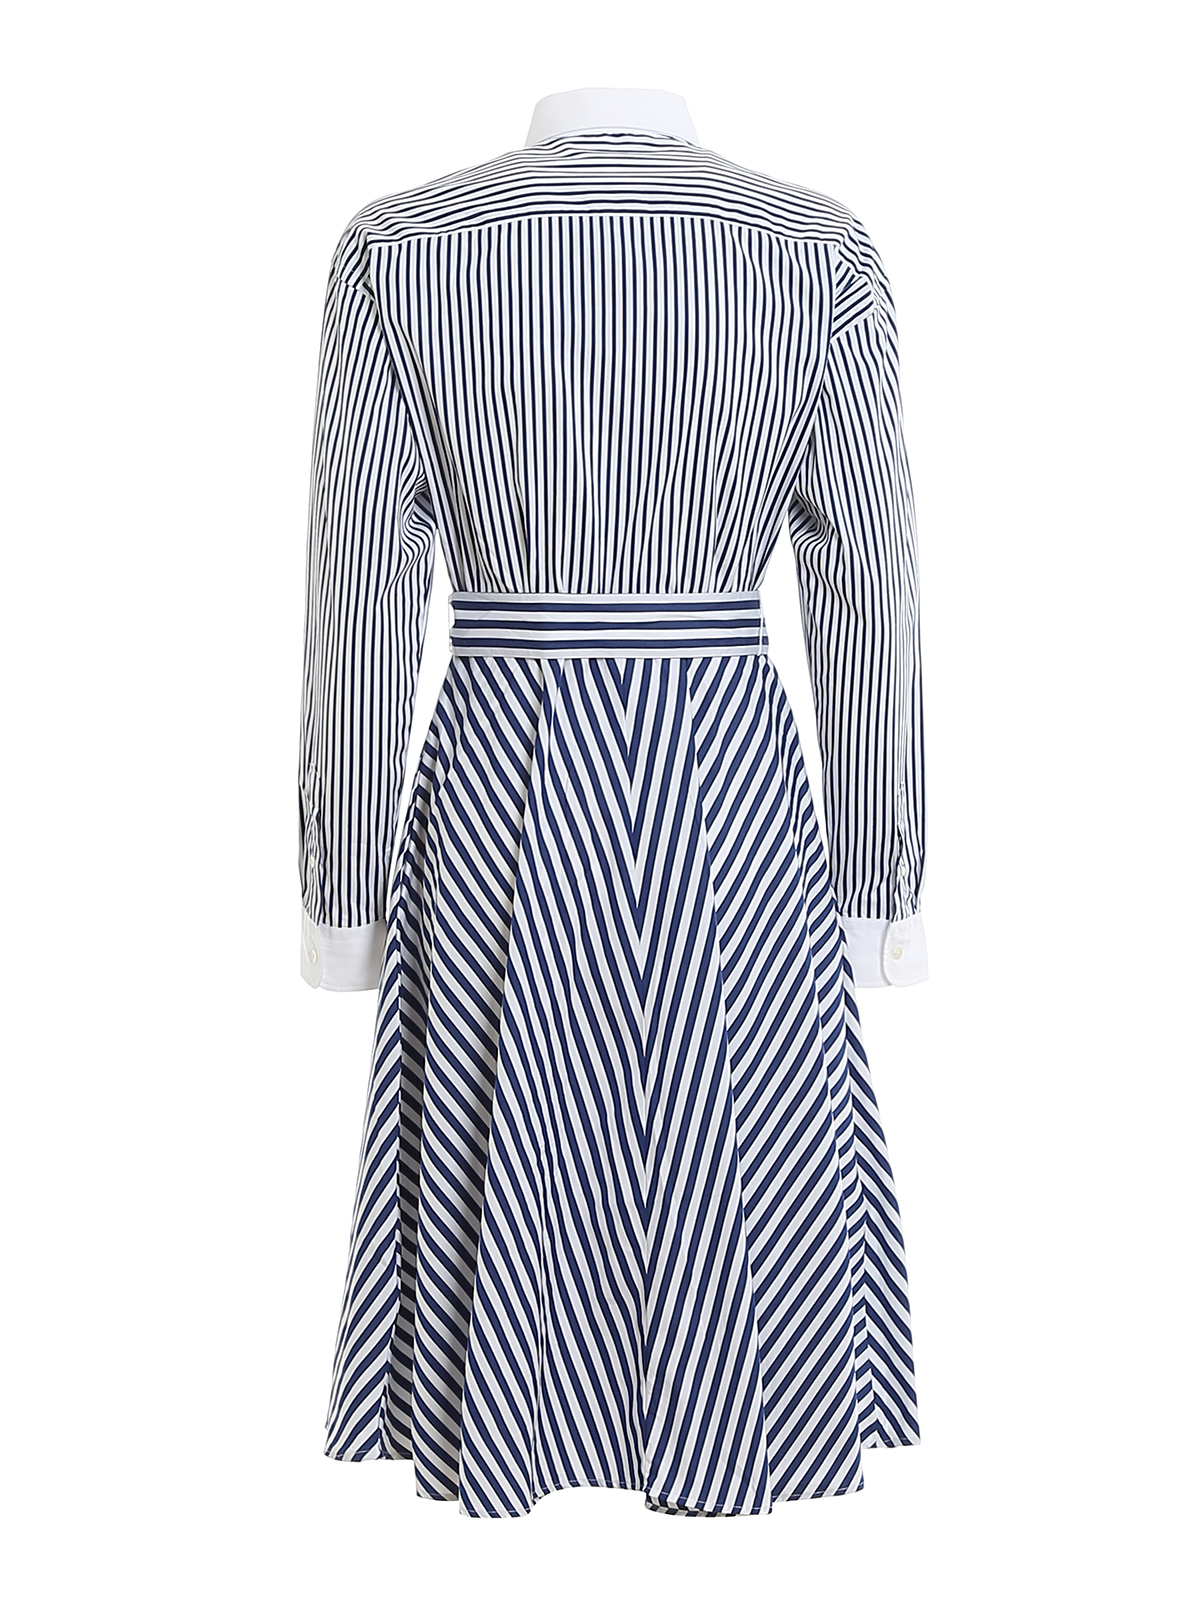 polo ralph lauren striped shirt dress